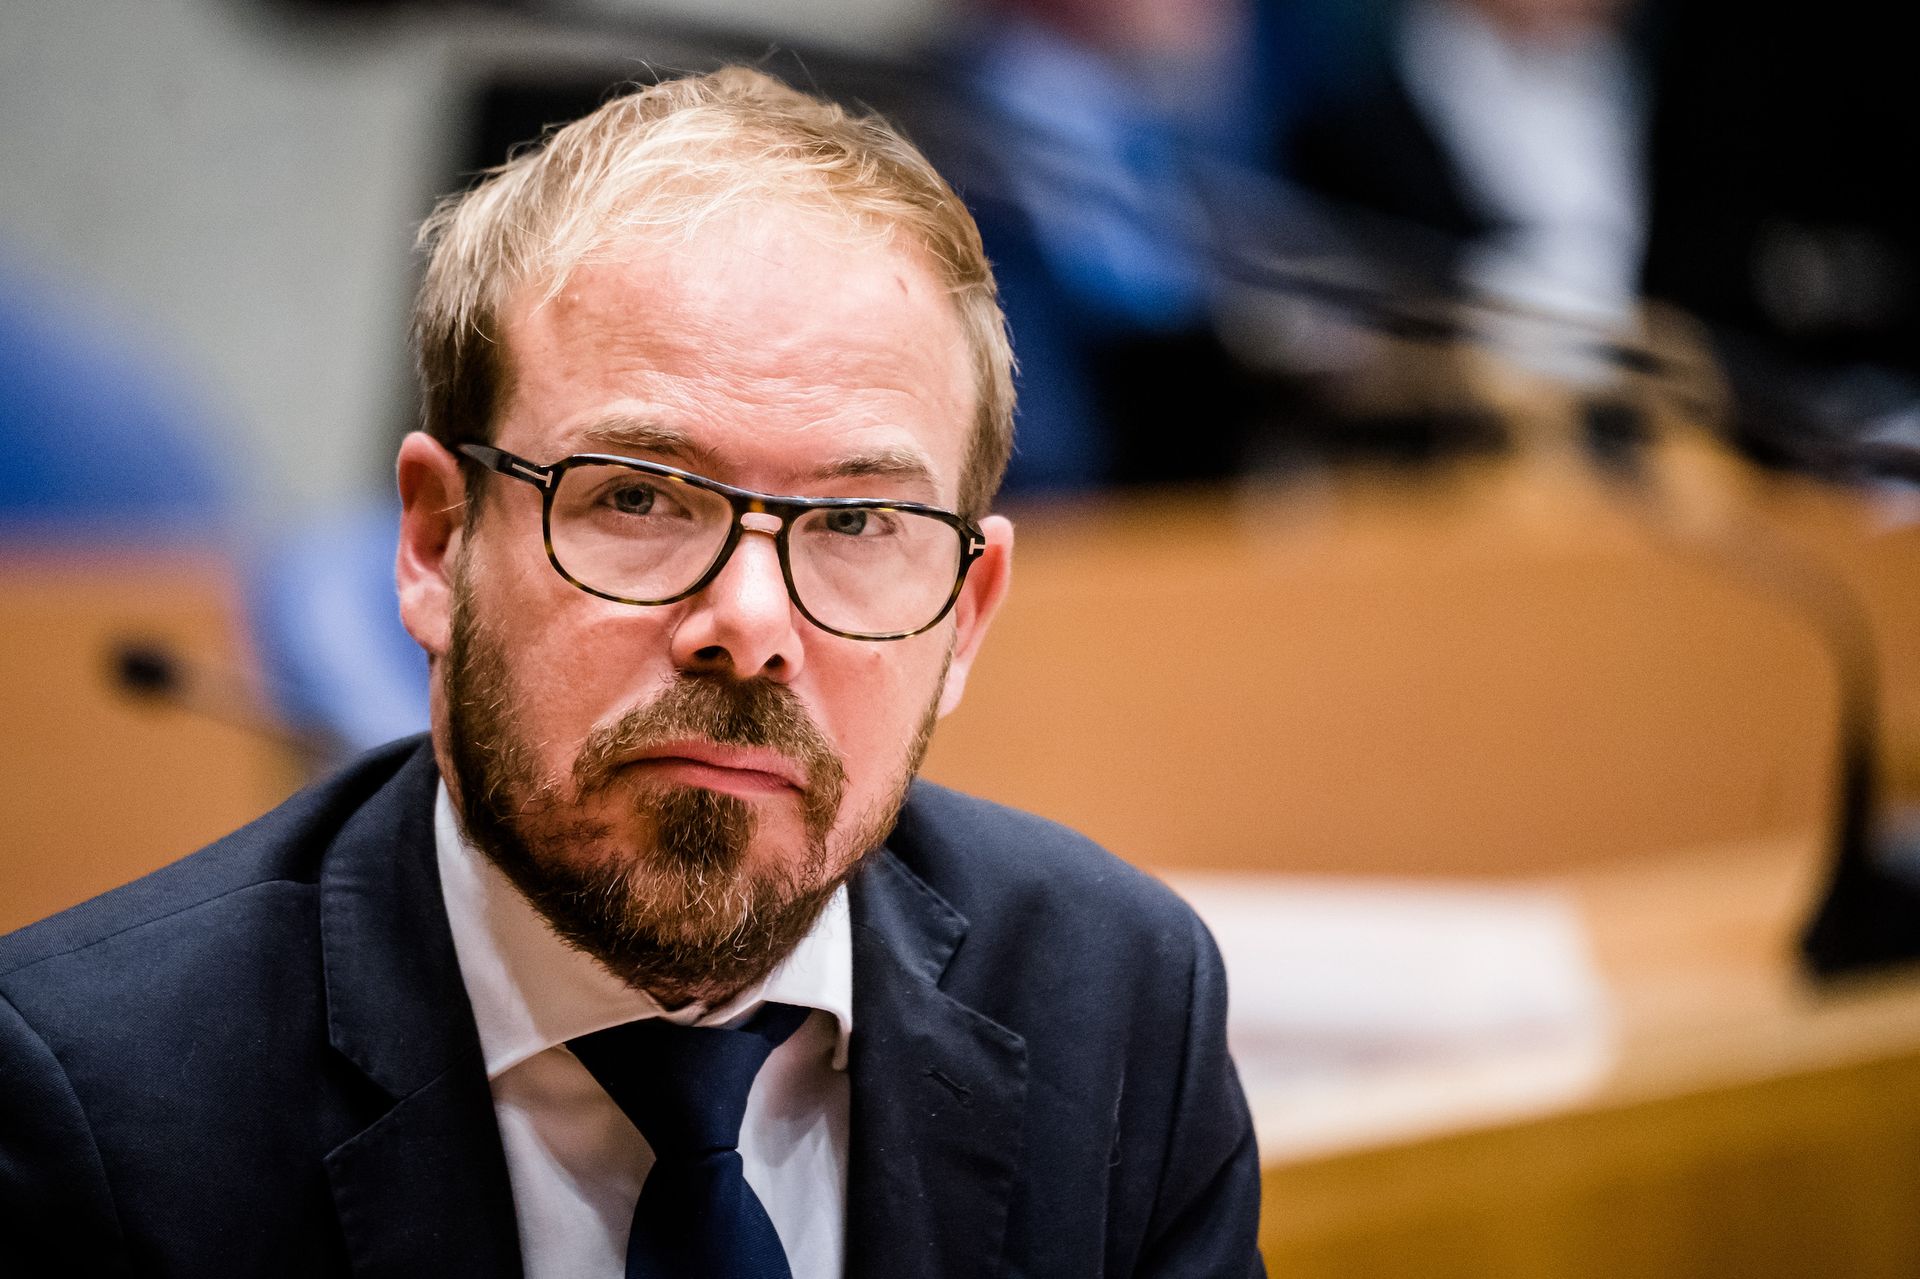 PvdA-Kamerlid Gijs van Dijk stapt op wegens #MeToo - Joop